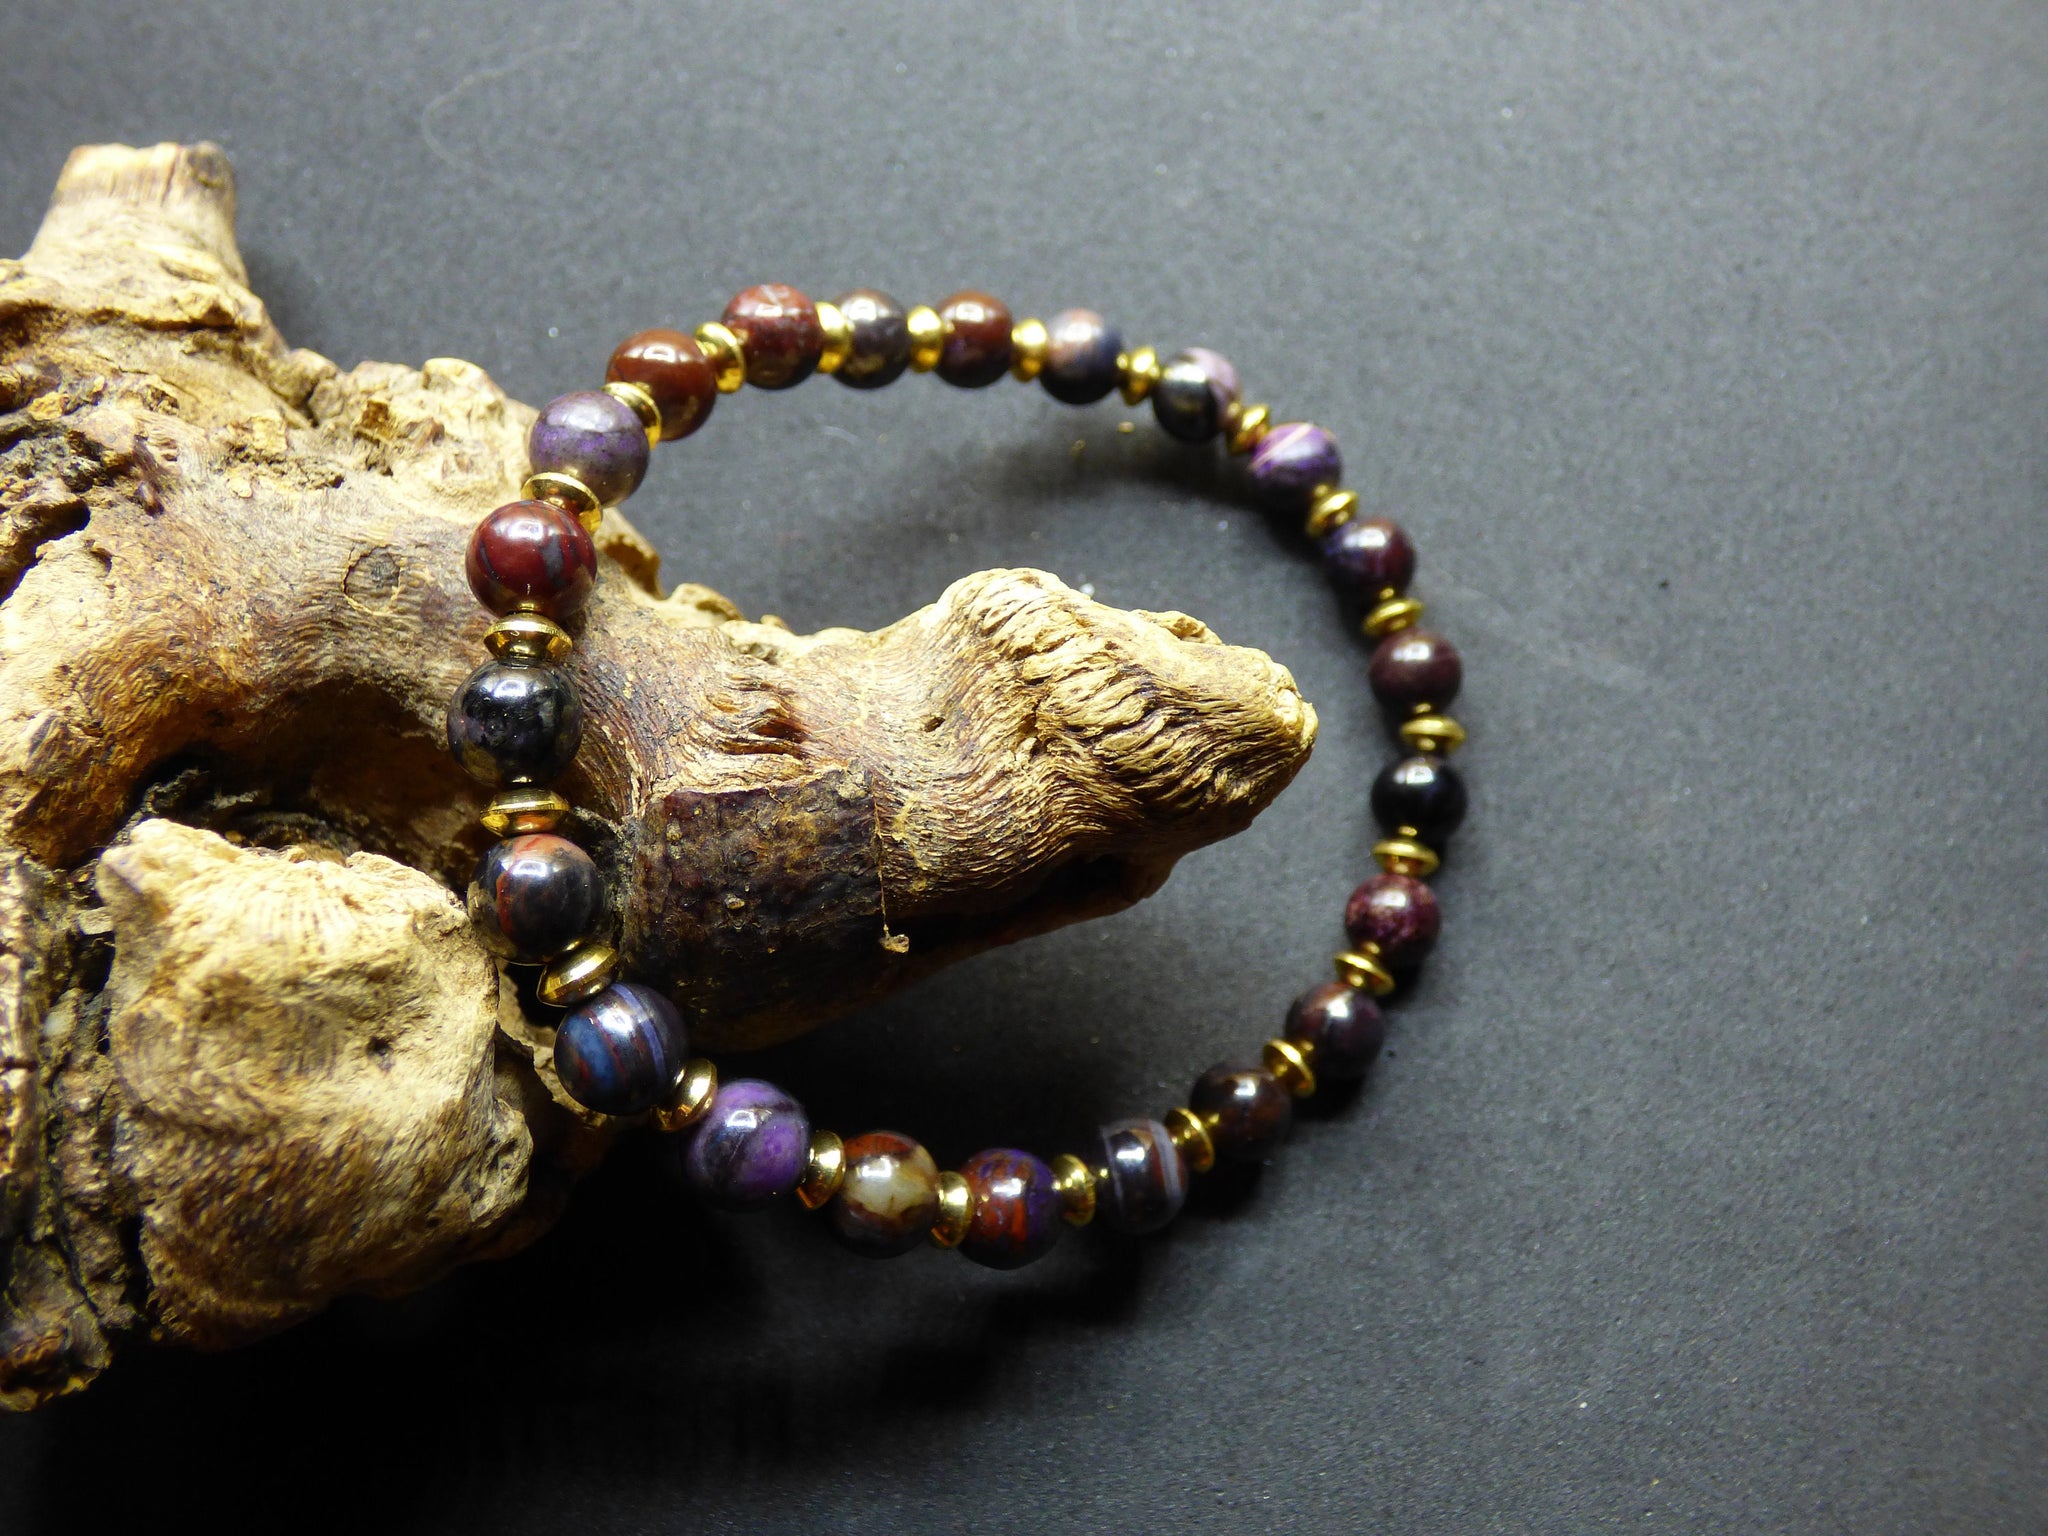 Sugilith Bustamit Richterit Sugilite ~ naürliches Edelstein Armband mit Perlen ~GOA ~ Hippie ~Boho ~Ethno ~Indie ~Nature ~Heilstein